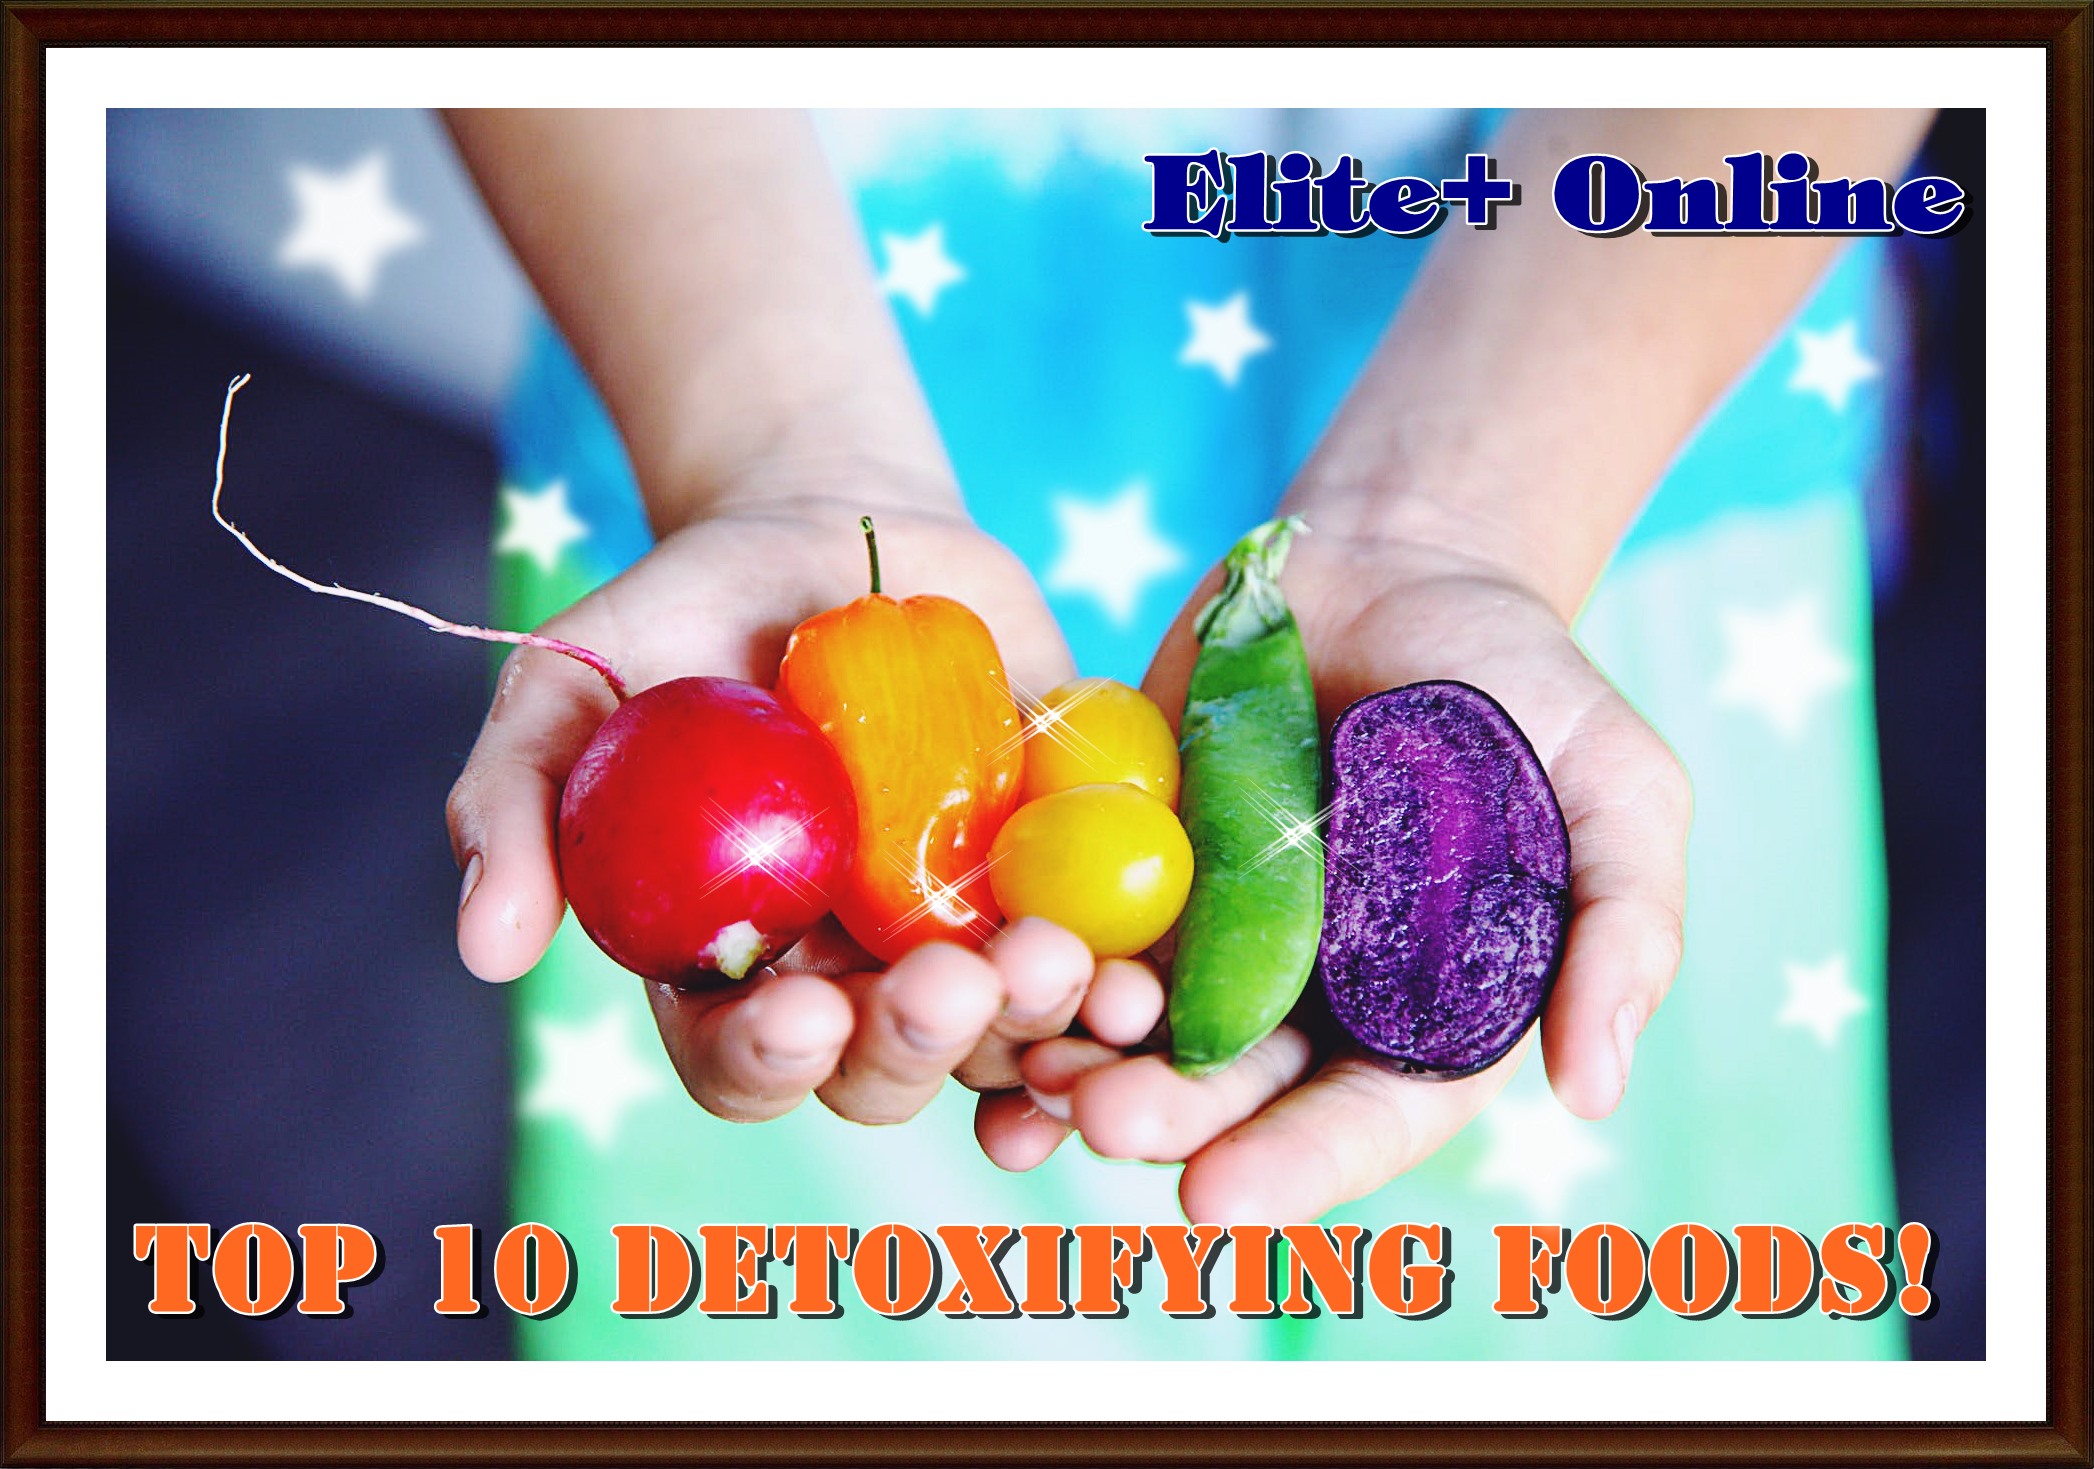 Top 10 Detoxifying Foods!